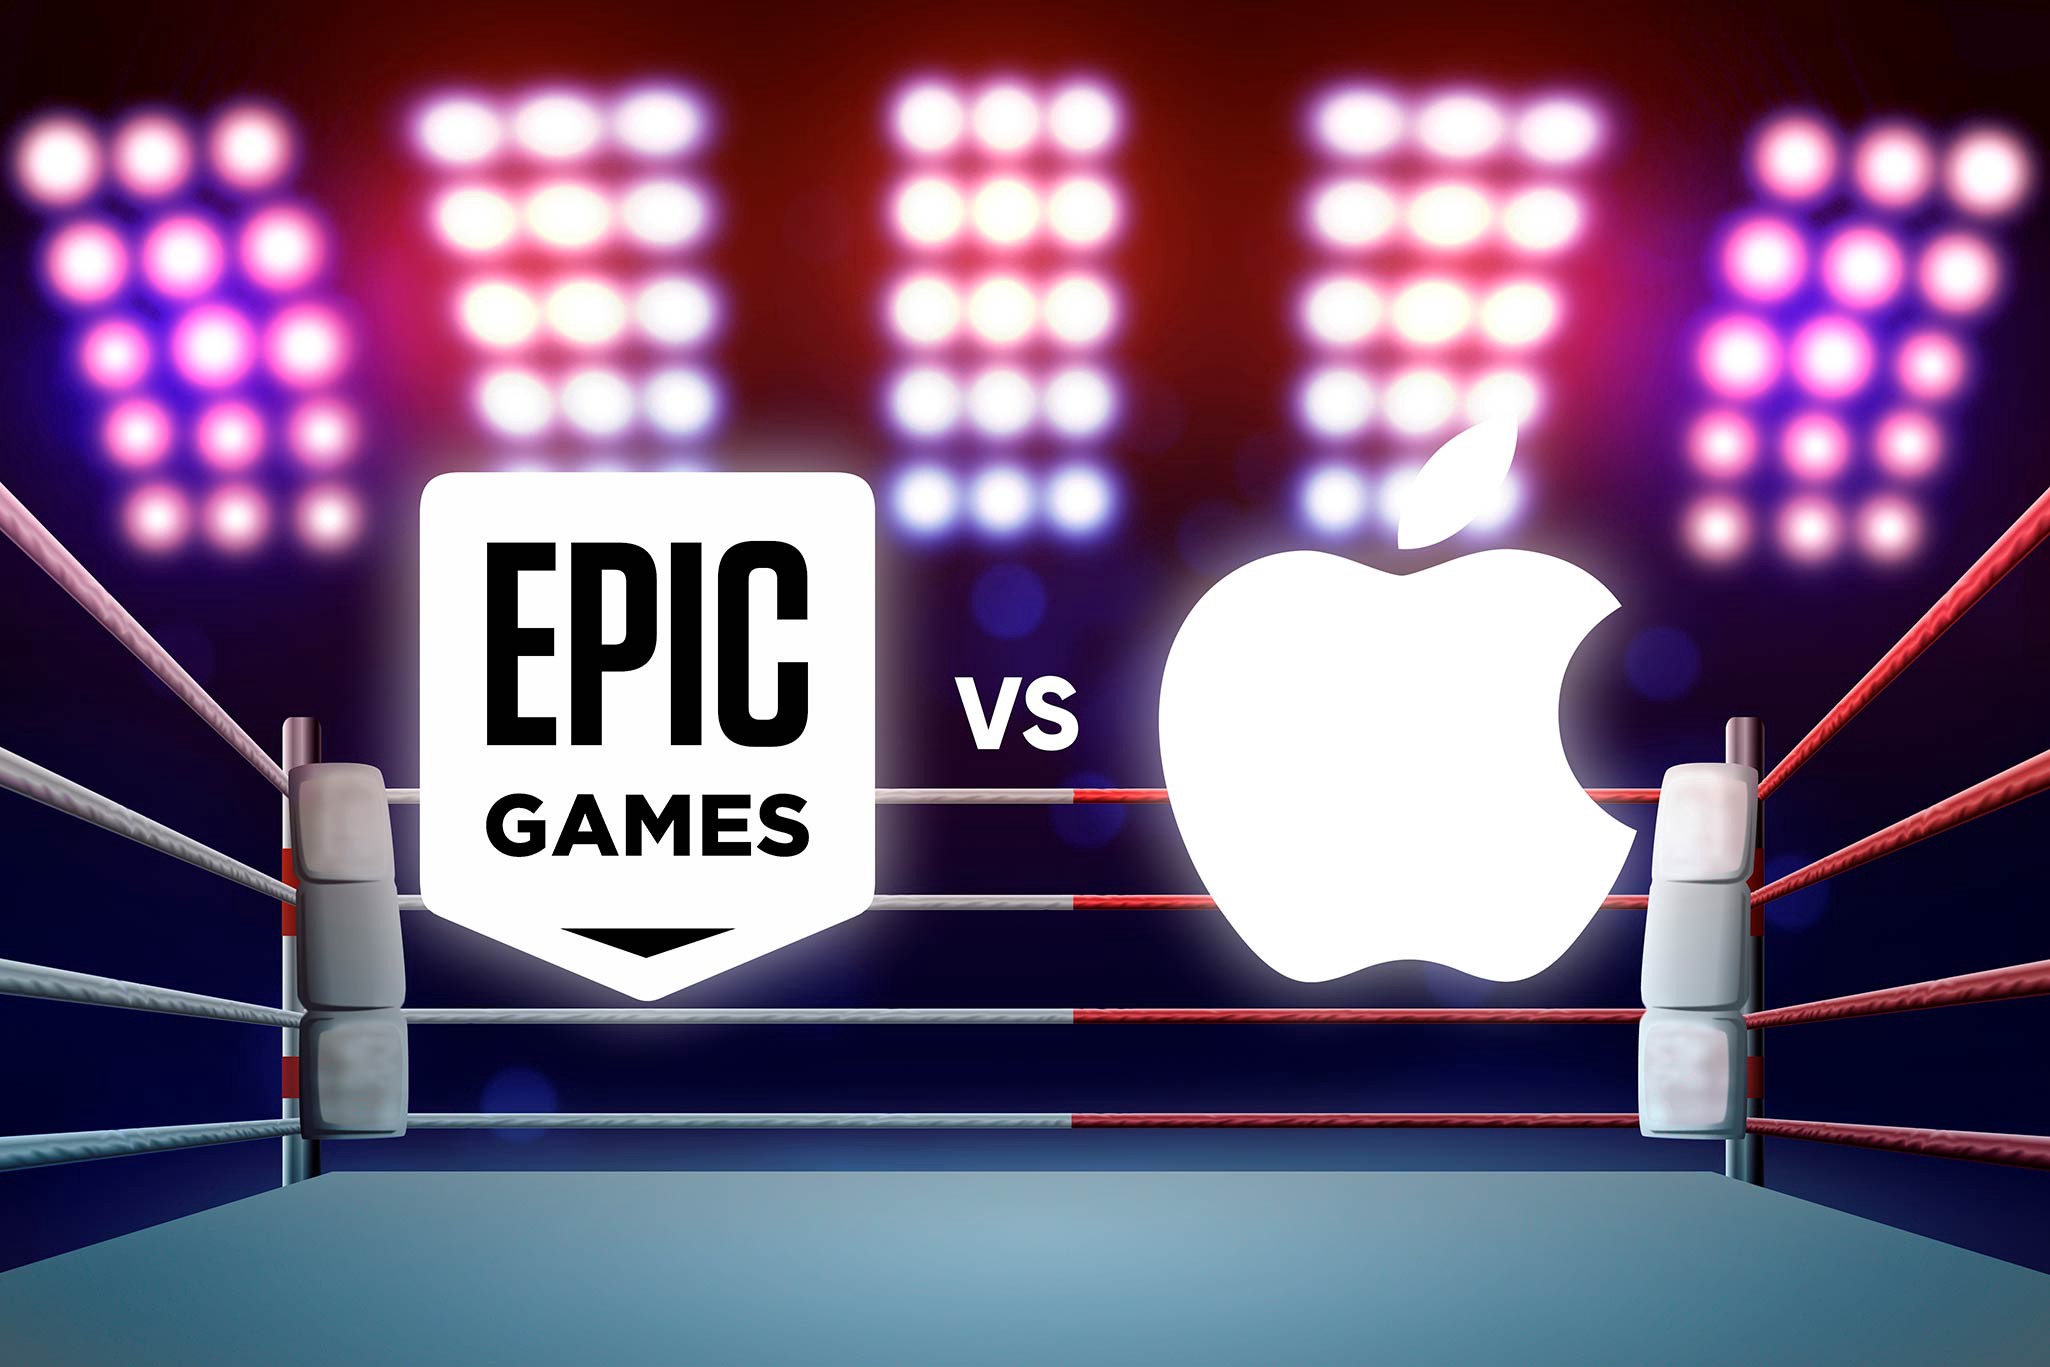 Суд поставив крапку в справі Epic Games проти Apple: дозвіл на сторонні способи оплати в App Store і великий штраф для Epic Games